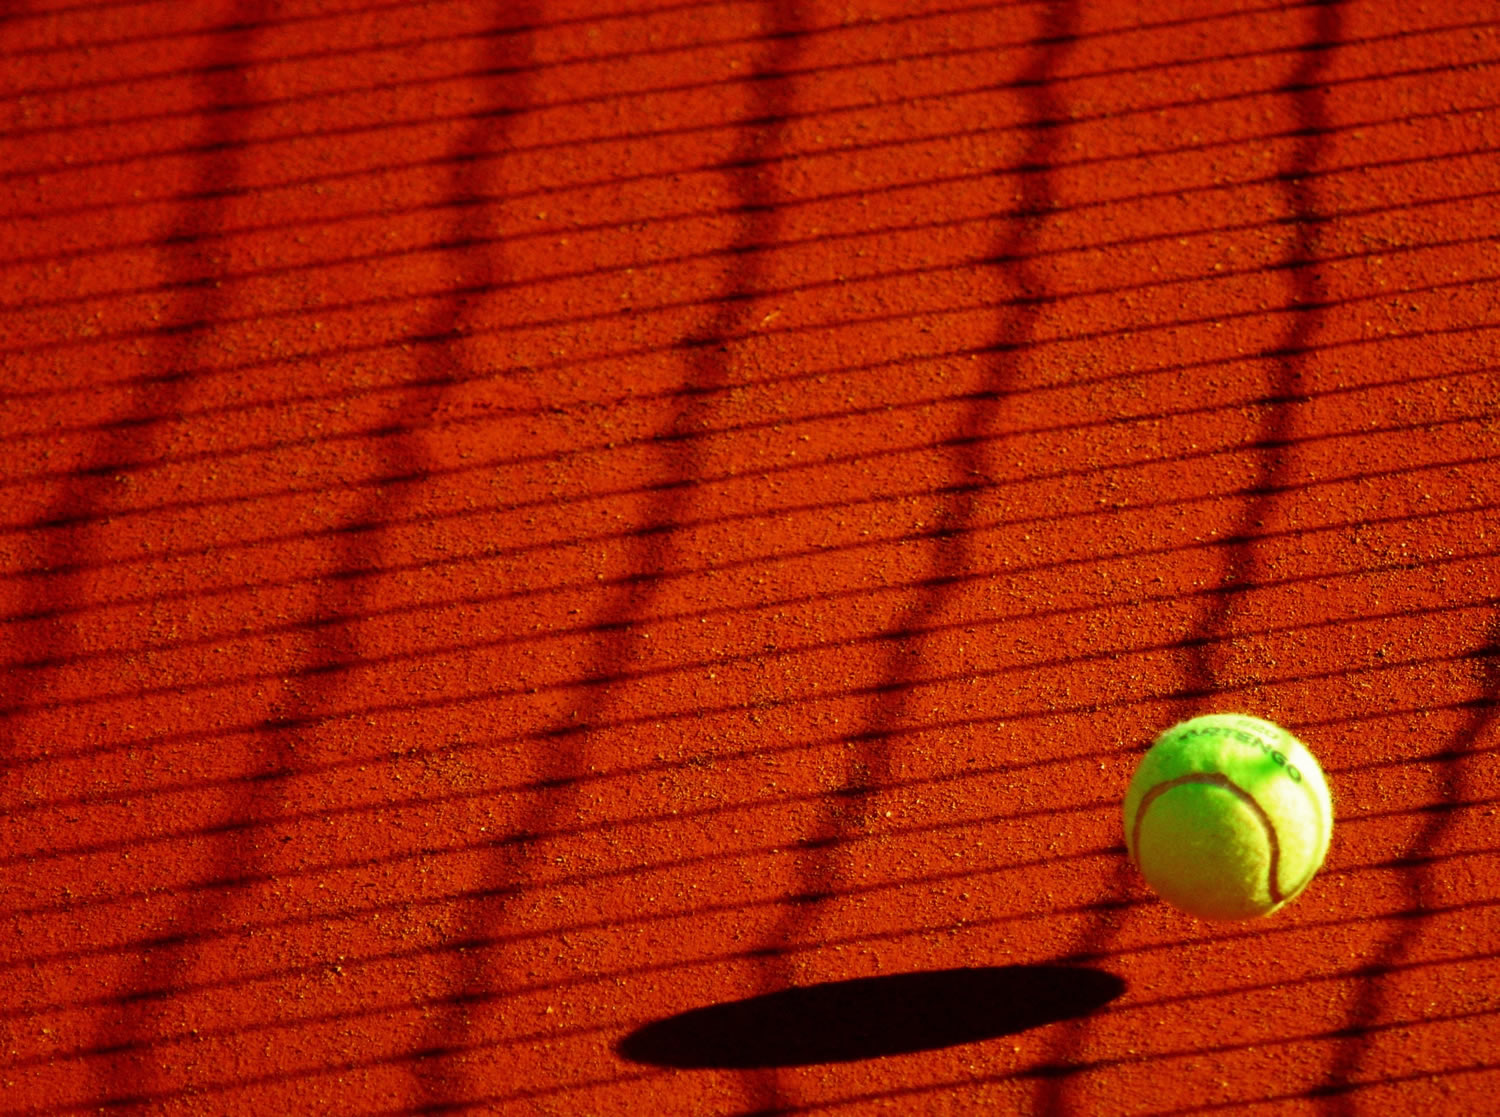 Pelota de tenis sobre cancha de color rojo